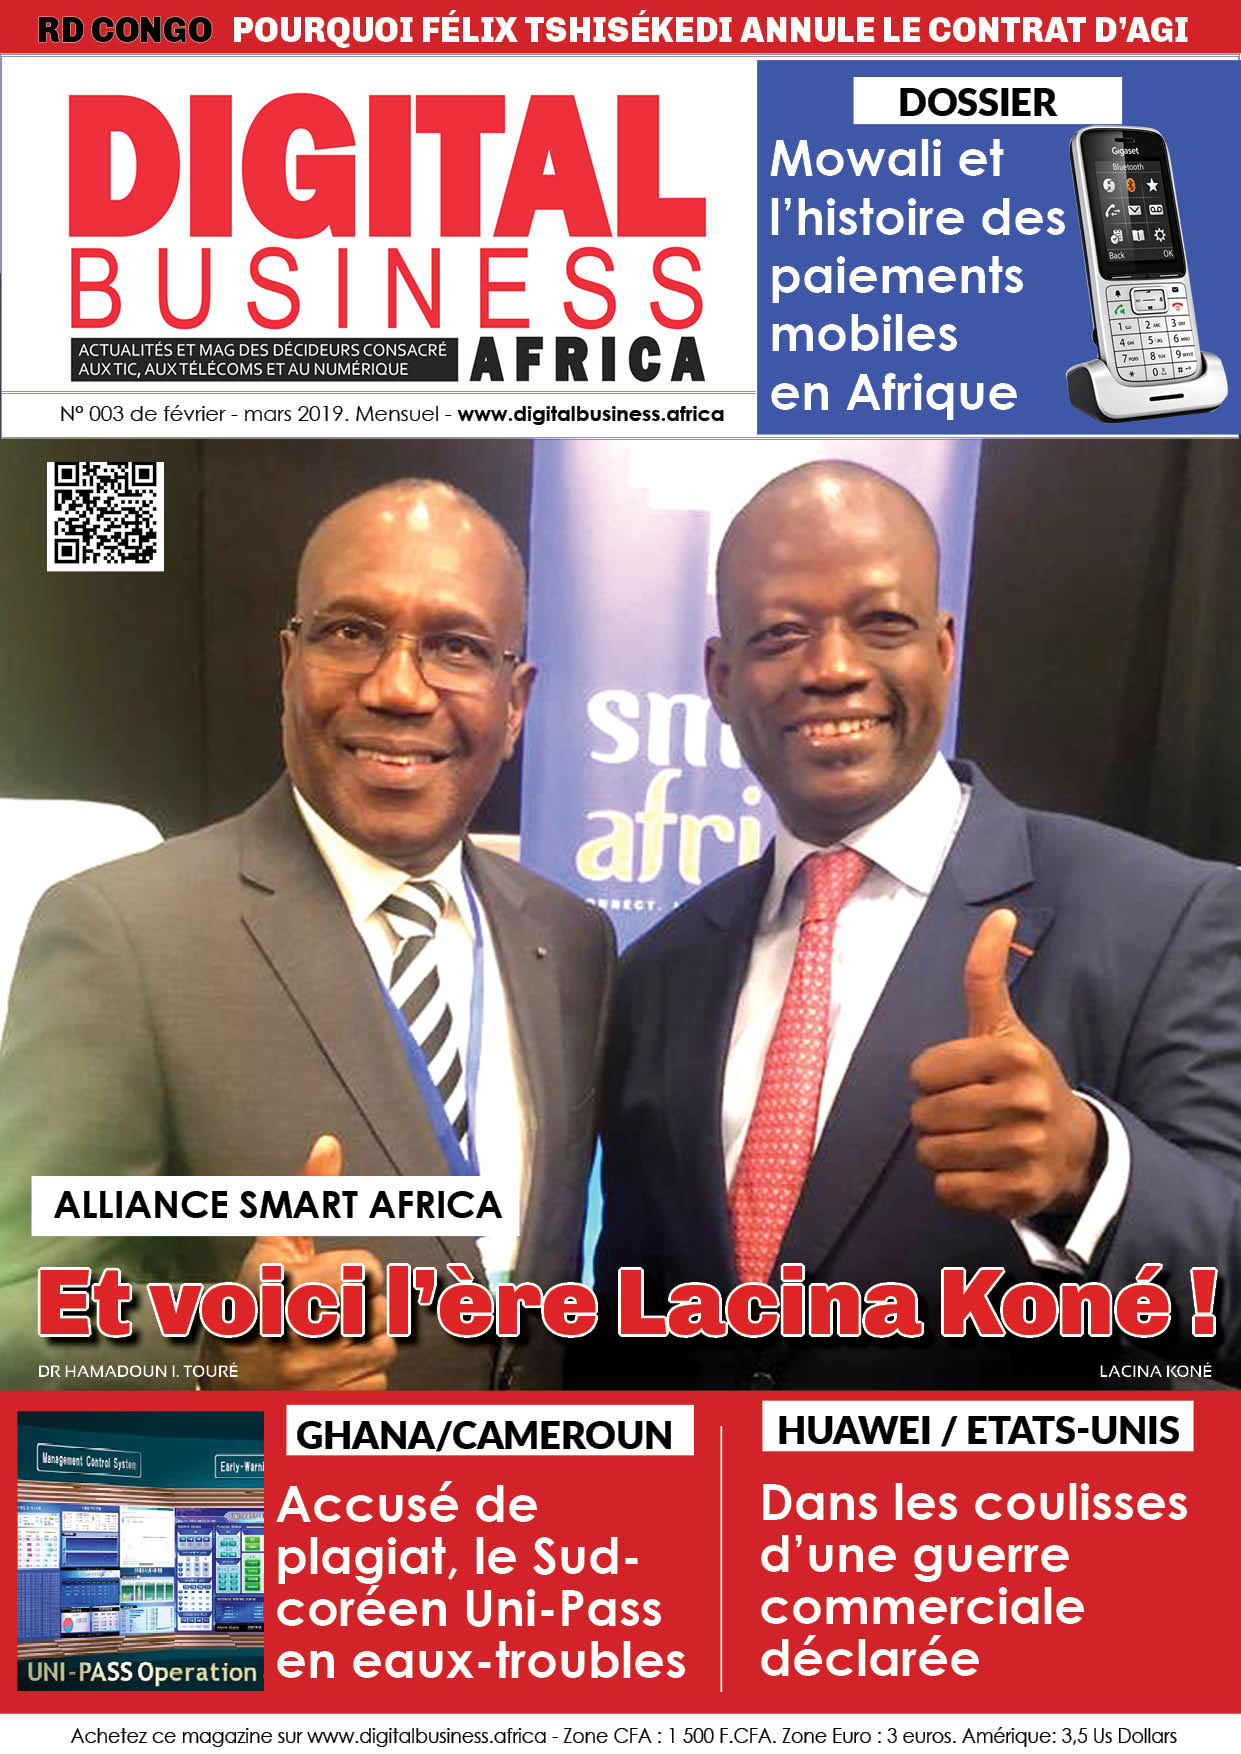 Digital Business Africa fait un focus sur Lacina Koné, nouveau DG de Smart Africa